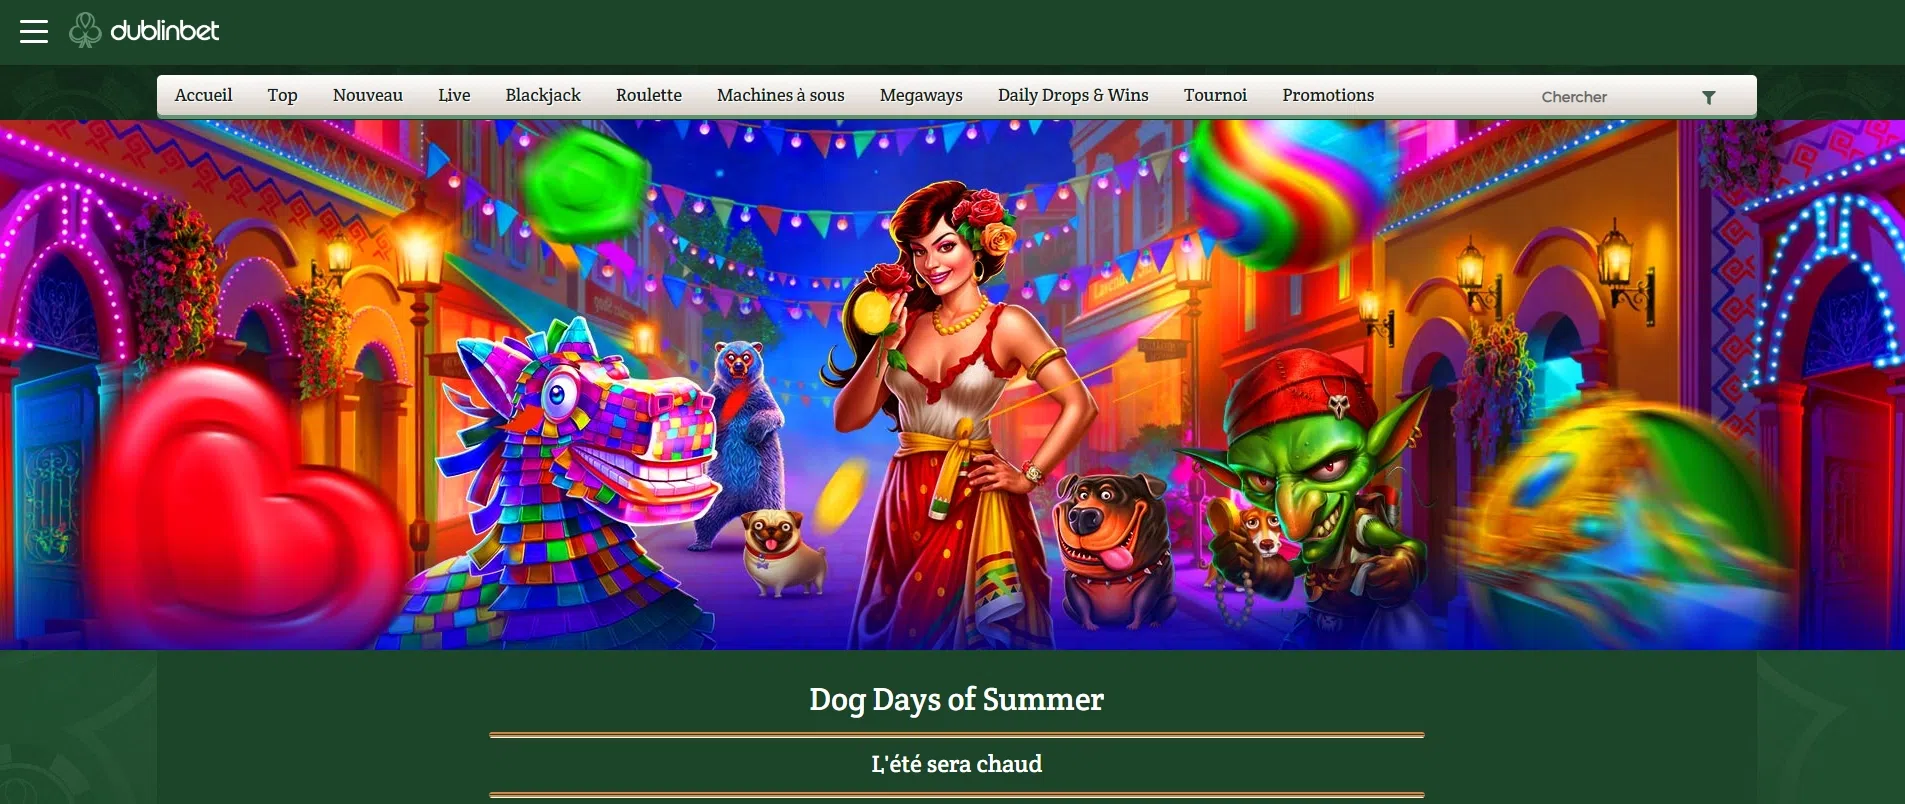 promotion de l’été sur le casino en ligne dublinbet